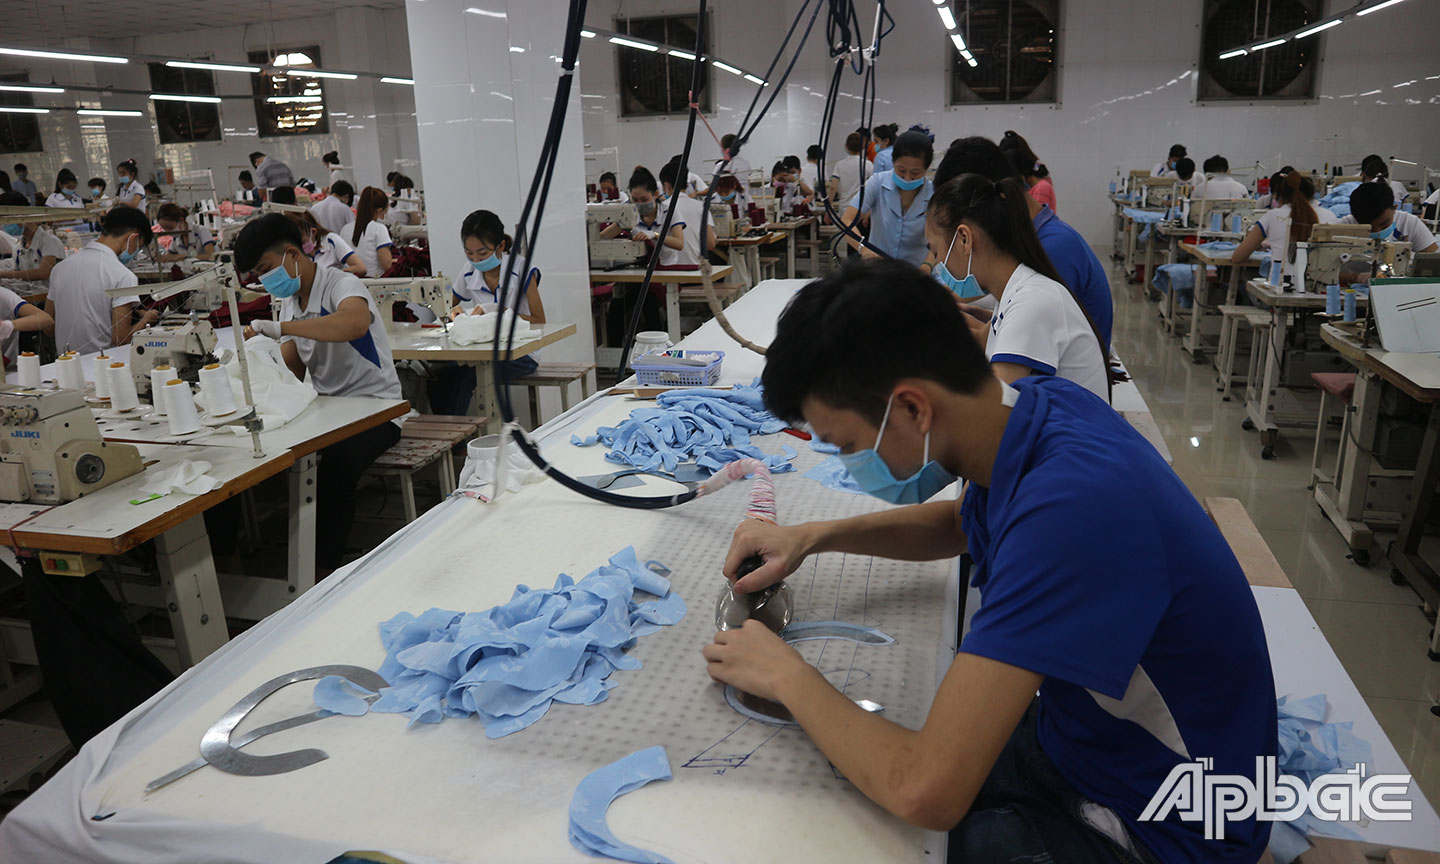 Công ty TNHH Sản xuất - Thương mại - Dịch vụ Hoan Vinh nhận thêm các đơn hàng như khẩu trang, bảo hộ y tế, gia công các sản phẩm may mặc… để công nhân không bị mất việc làm. (ảnh chụp trước ngày 12-6-2021)